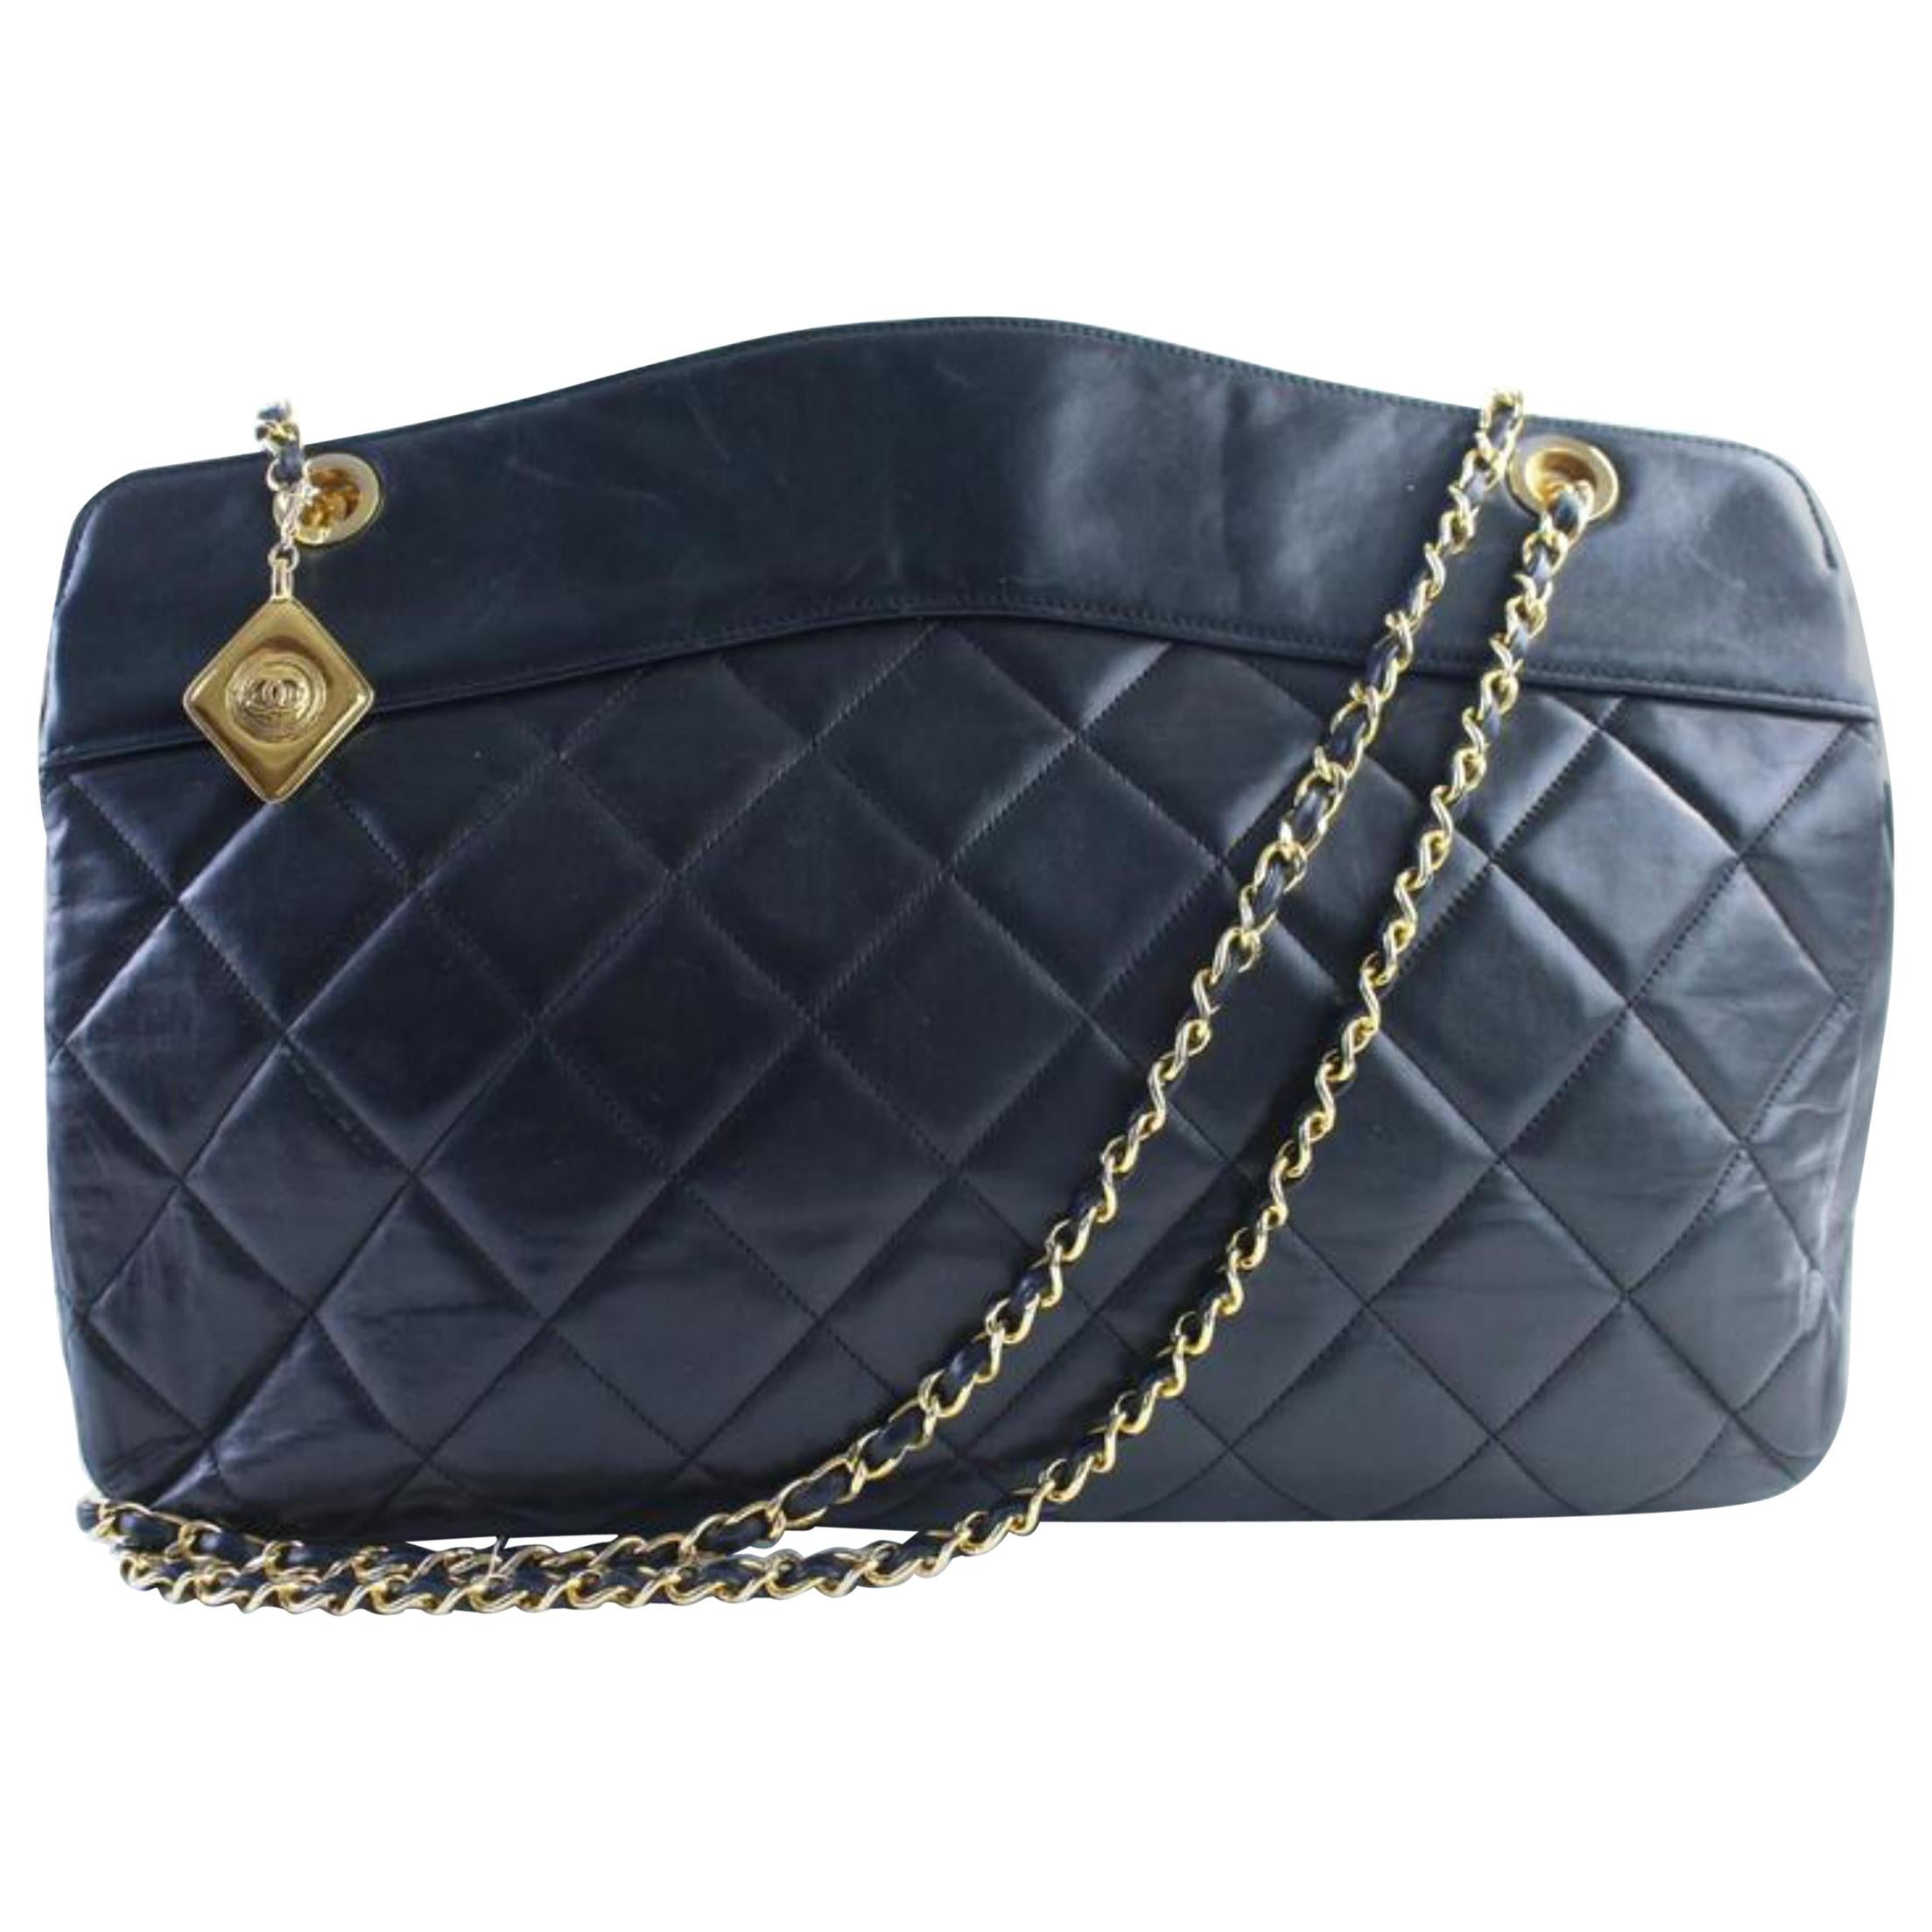 Chanel Medallion Chain Tote 14cr0515 Black Leather Shoulder Bag For Sale